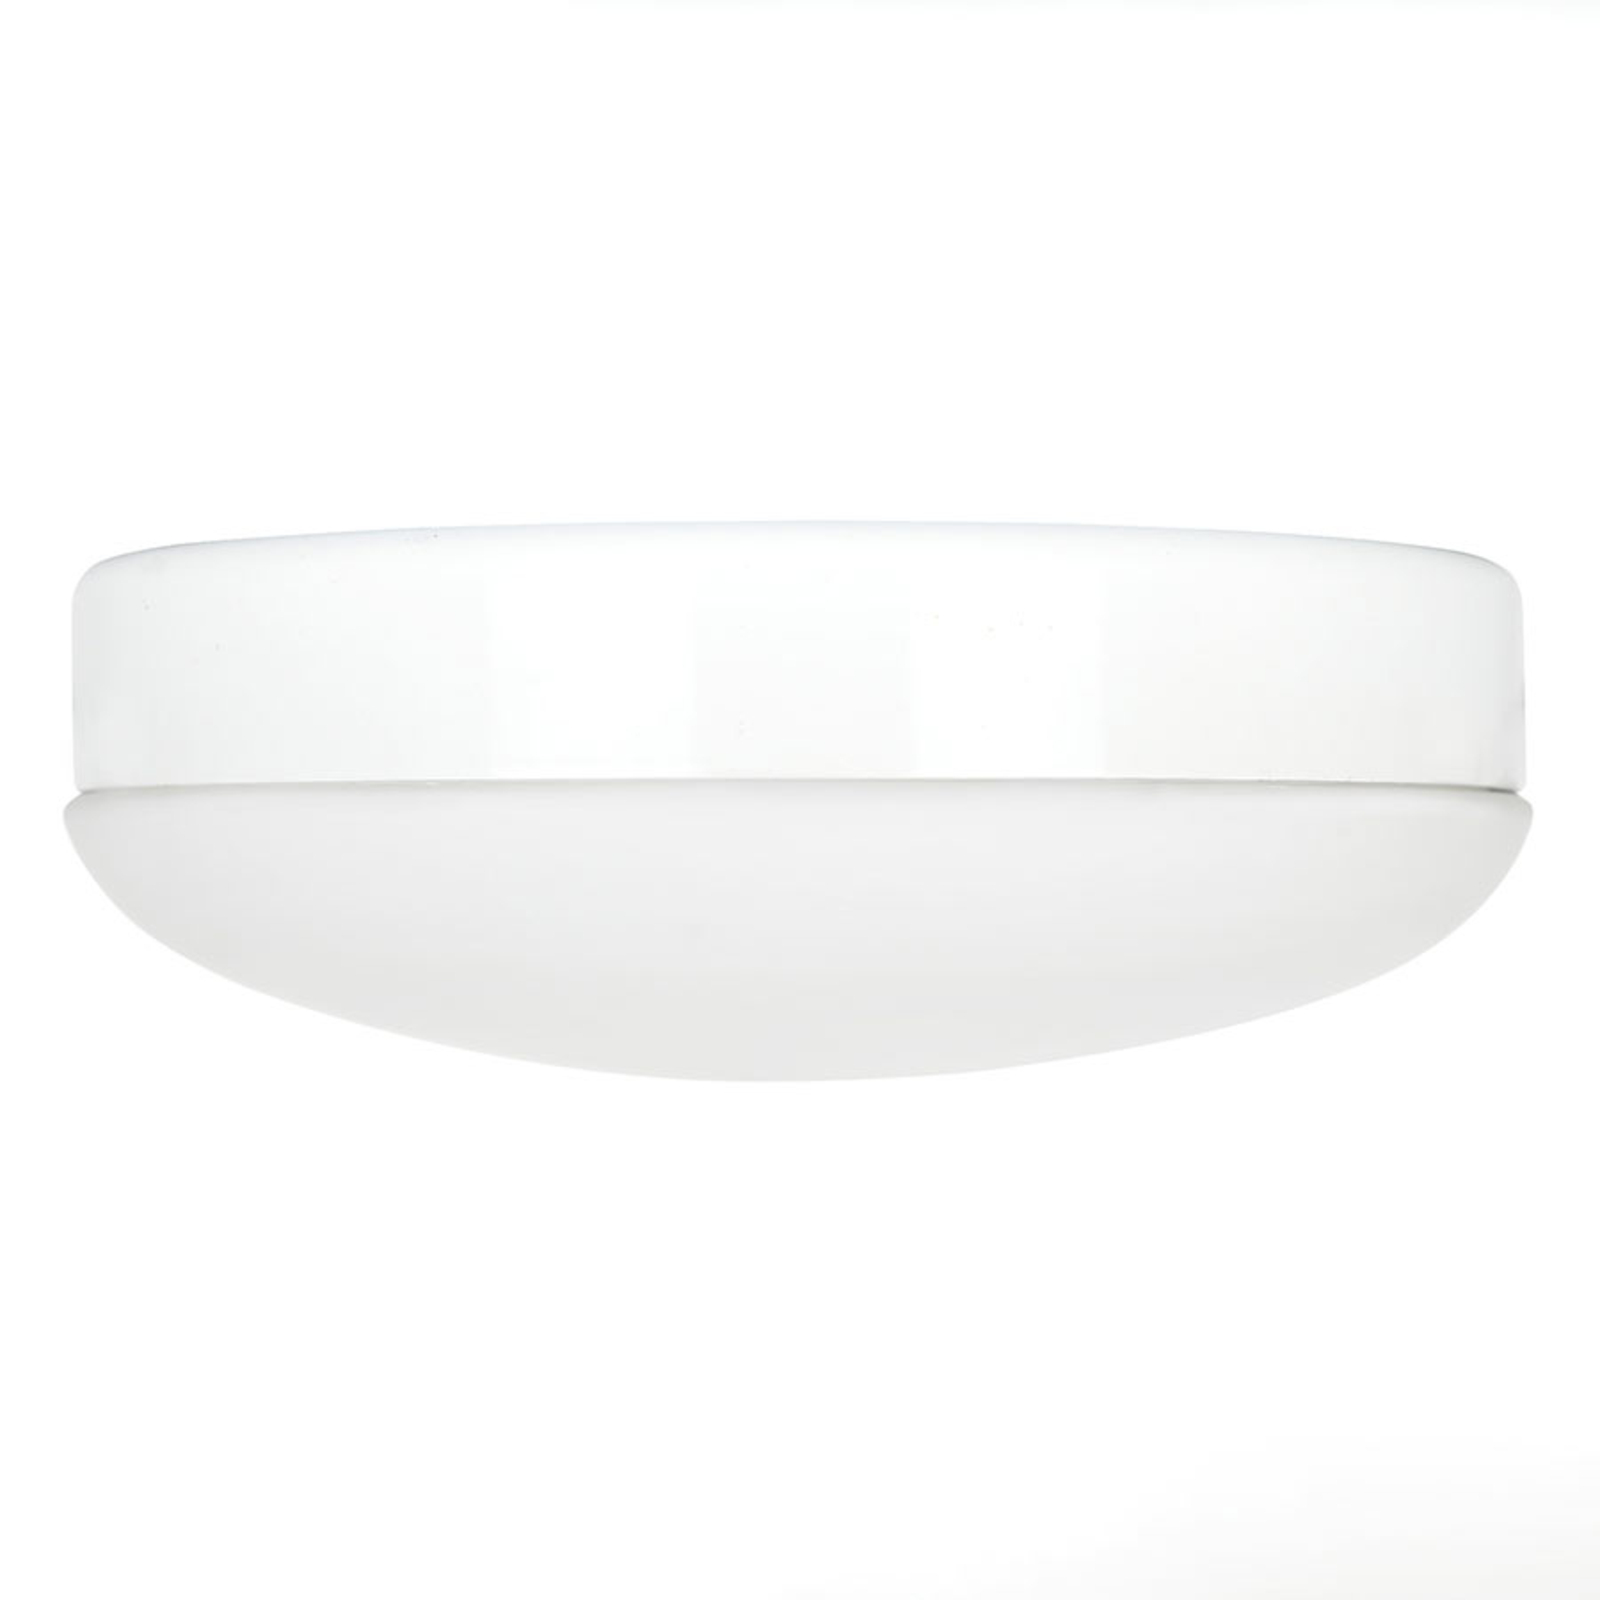 LED aanbouw lamp voor Eco Concept, wit